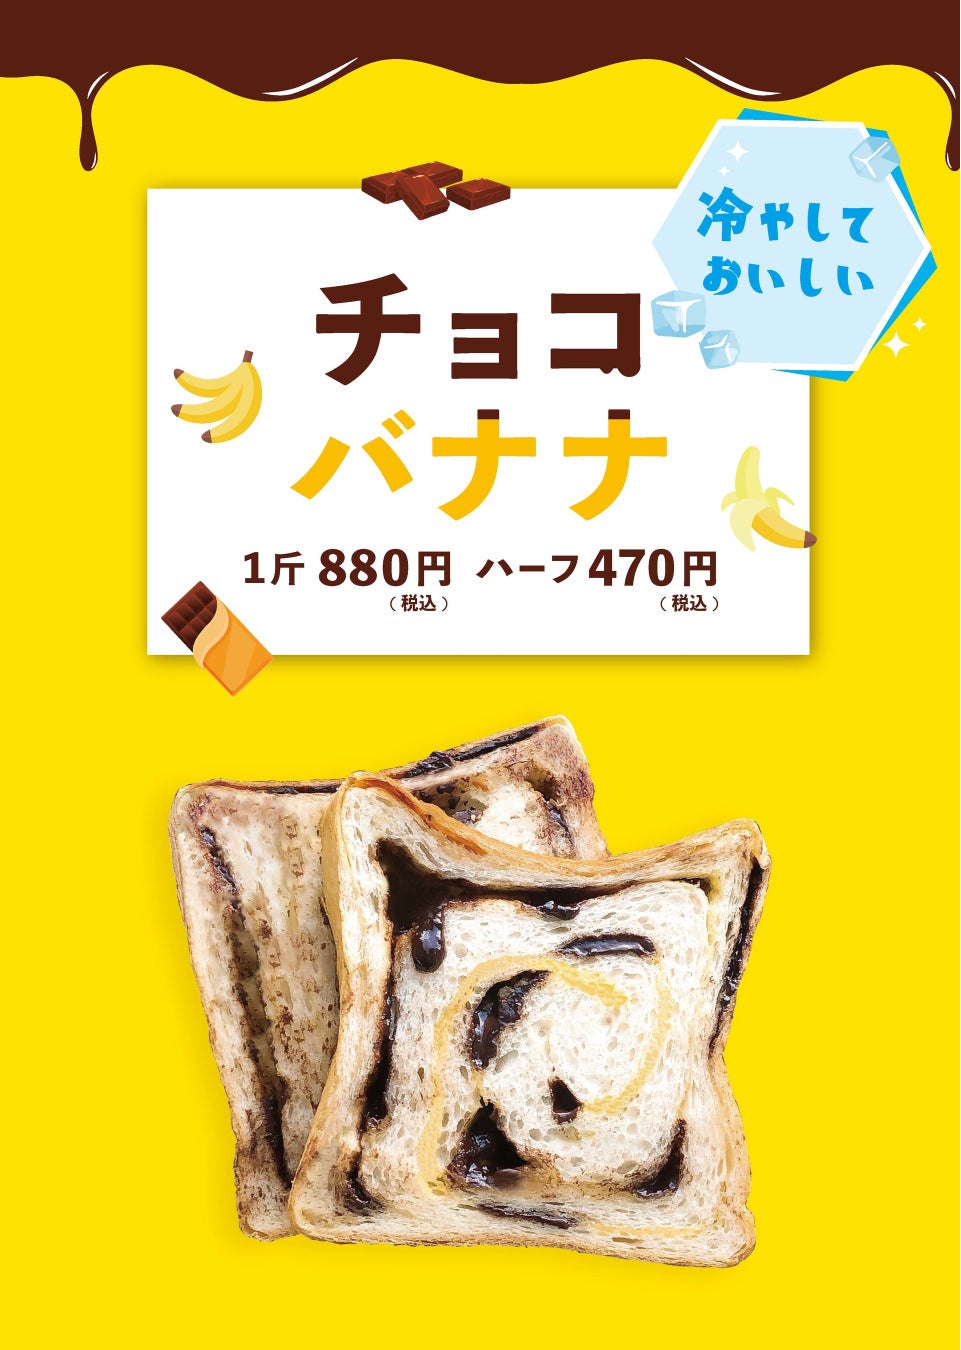 【スナックミー】規格外の徳島県名産：春にんじんをアップサイクル。「Upキャロットケーキ」を6/2(木)から数量・期間限定販売し、フードロス削減へ。